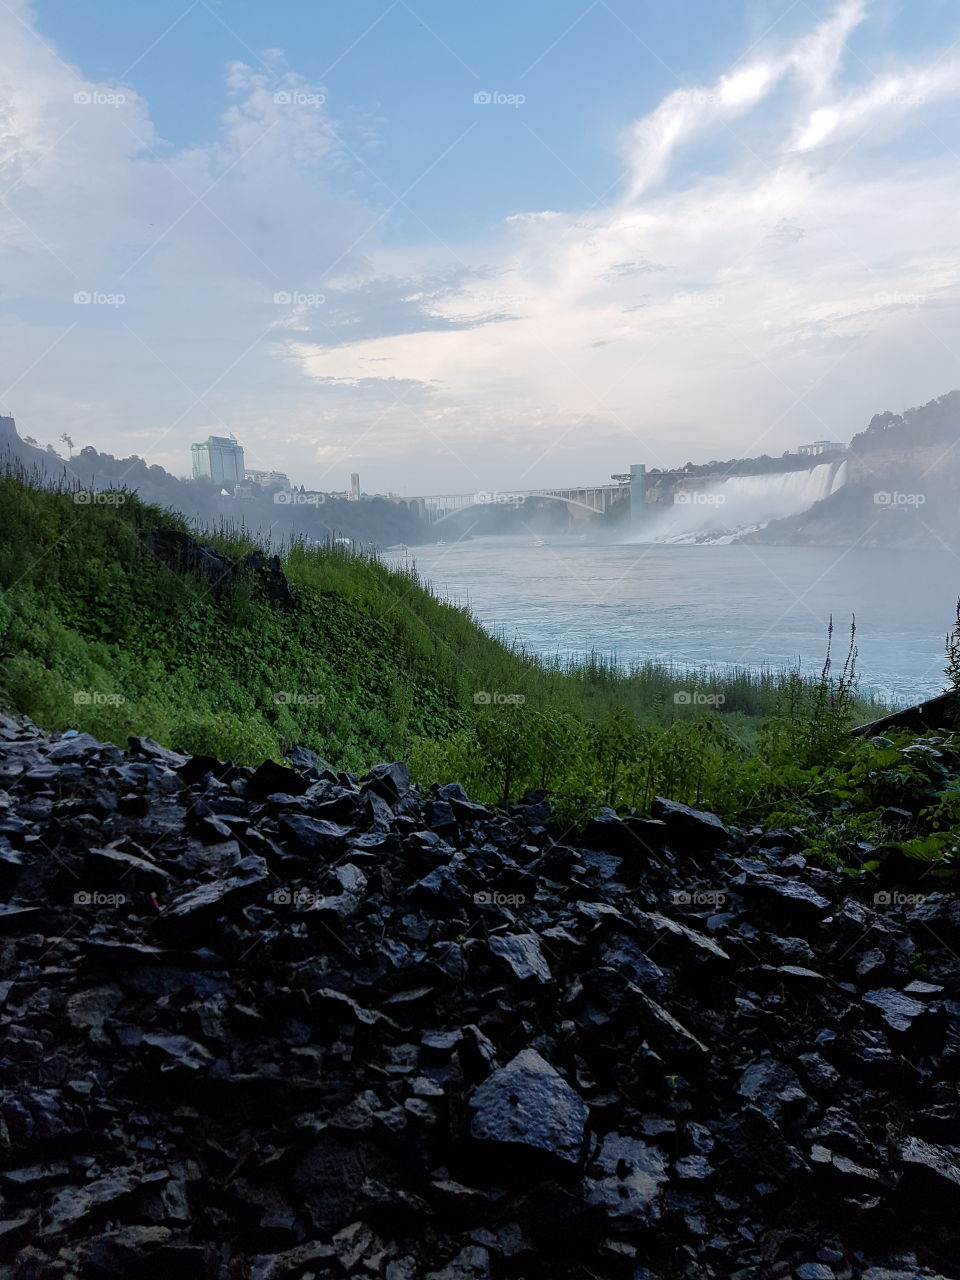 Picture taken at Niagara falls